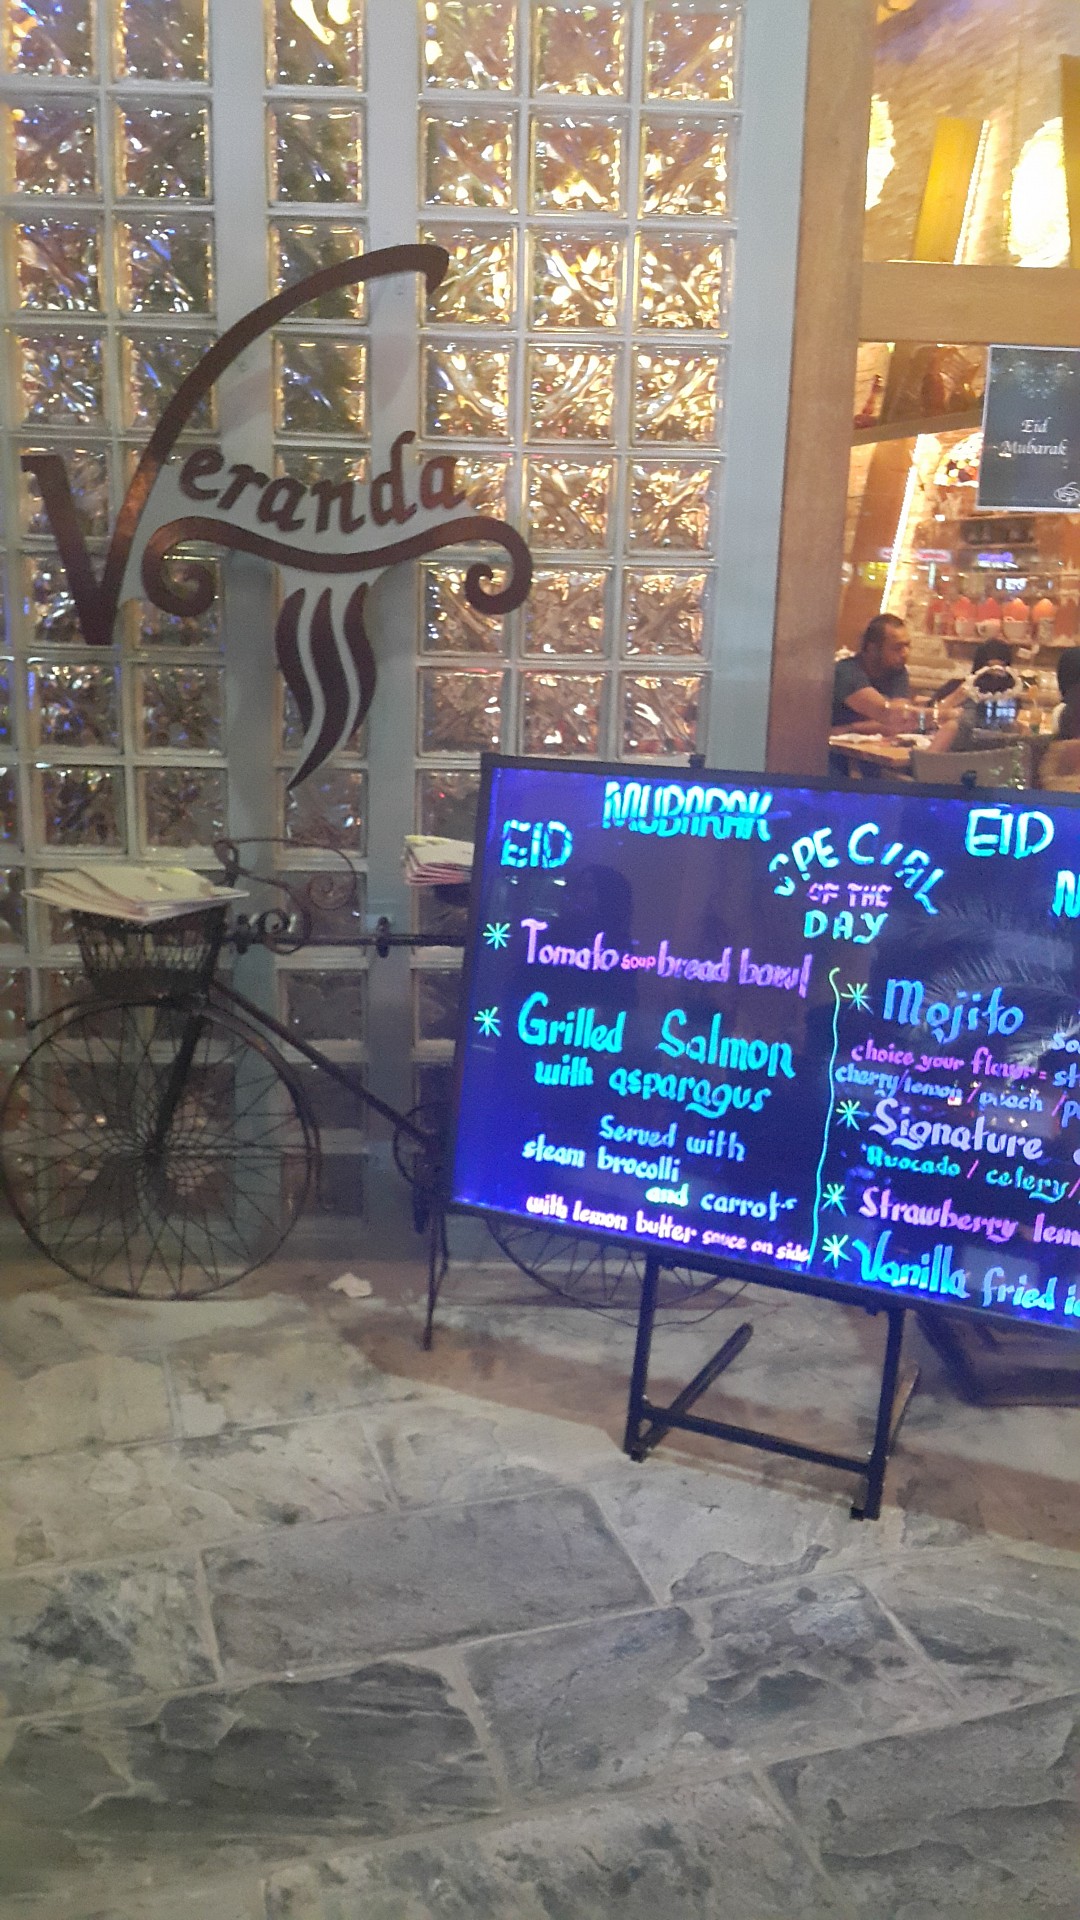 Veranda Cafe - Bahrain